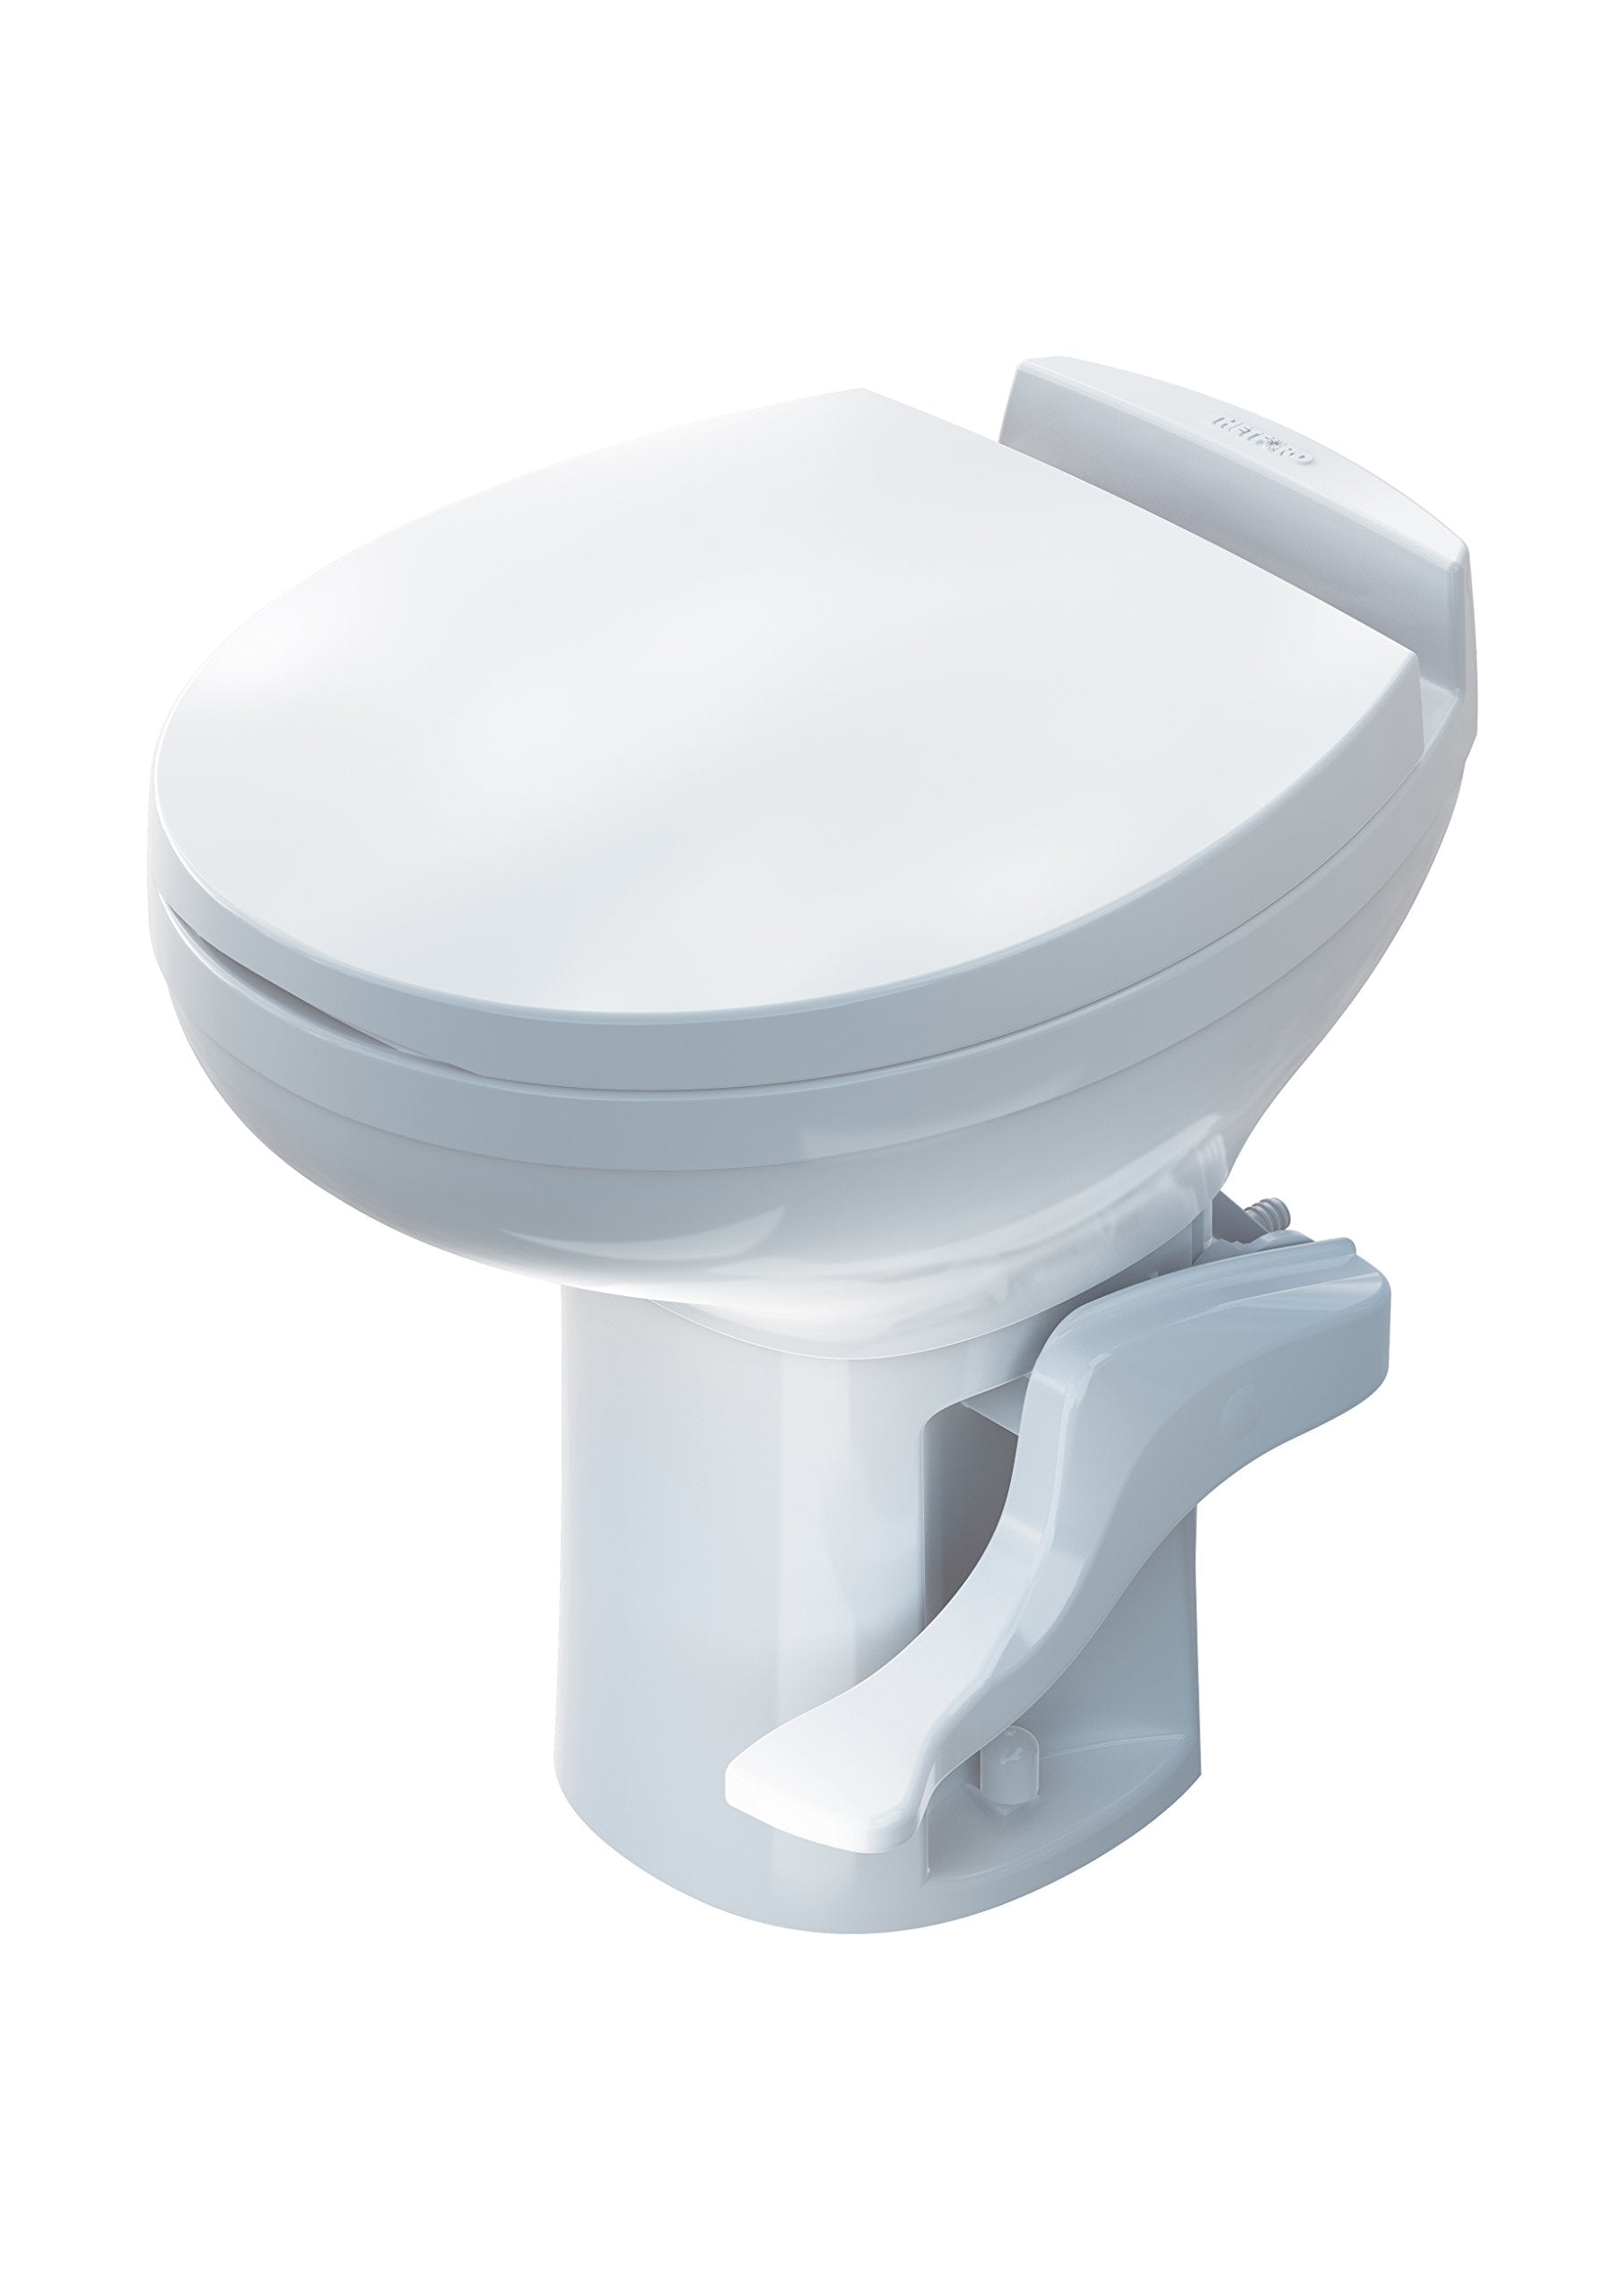 Aqua Magic Residence RV Toilet / High Profile / White - Thetford 42169